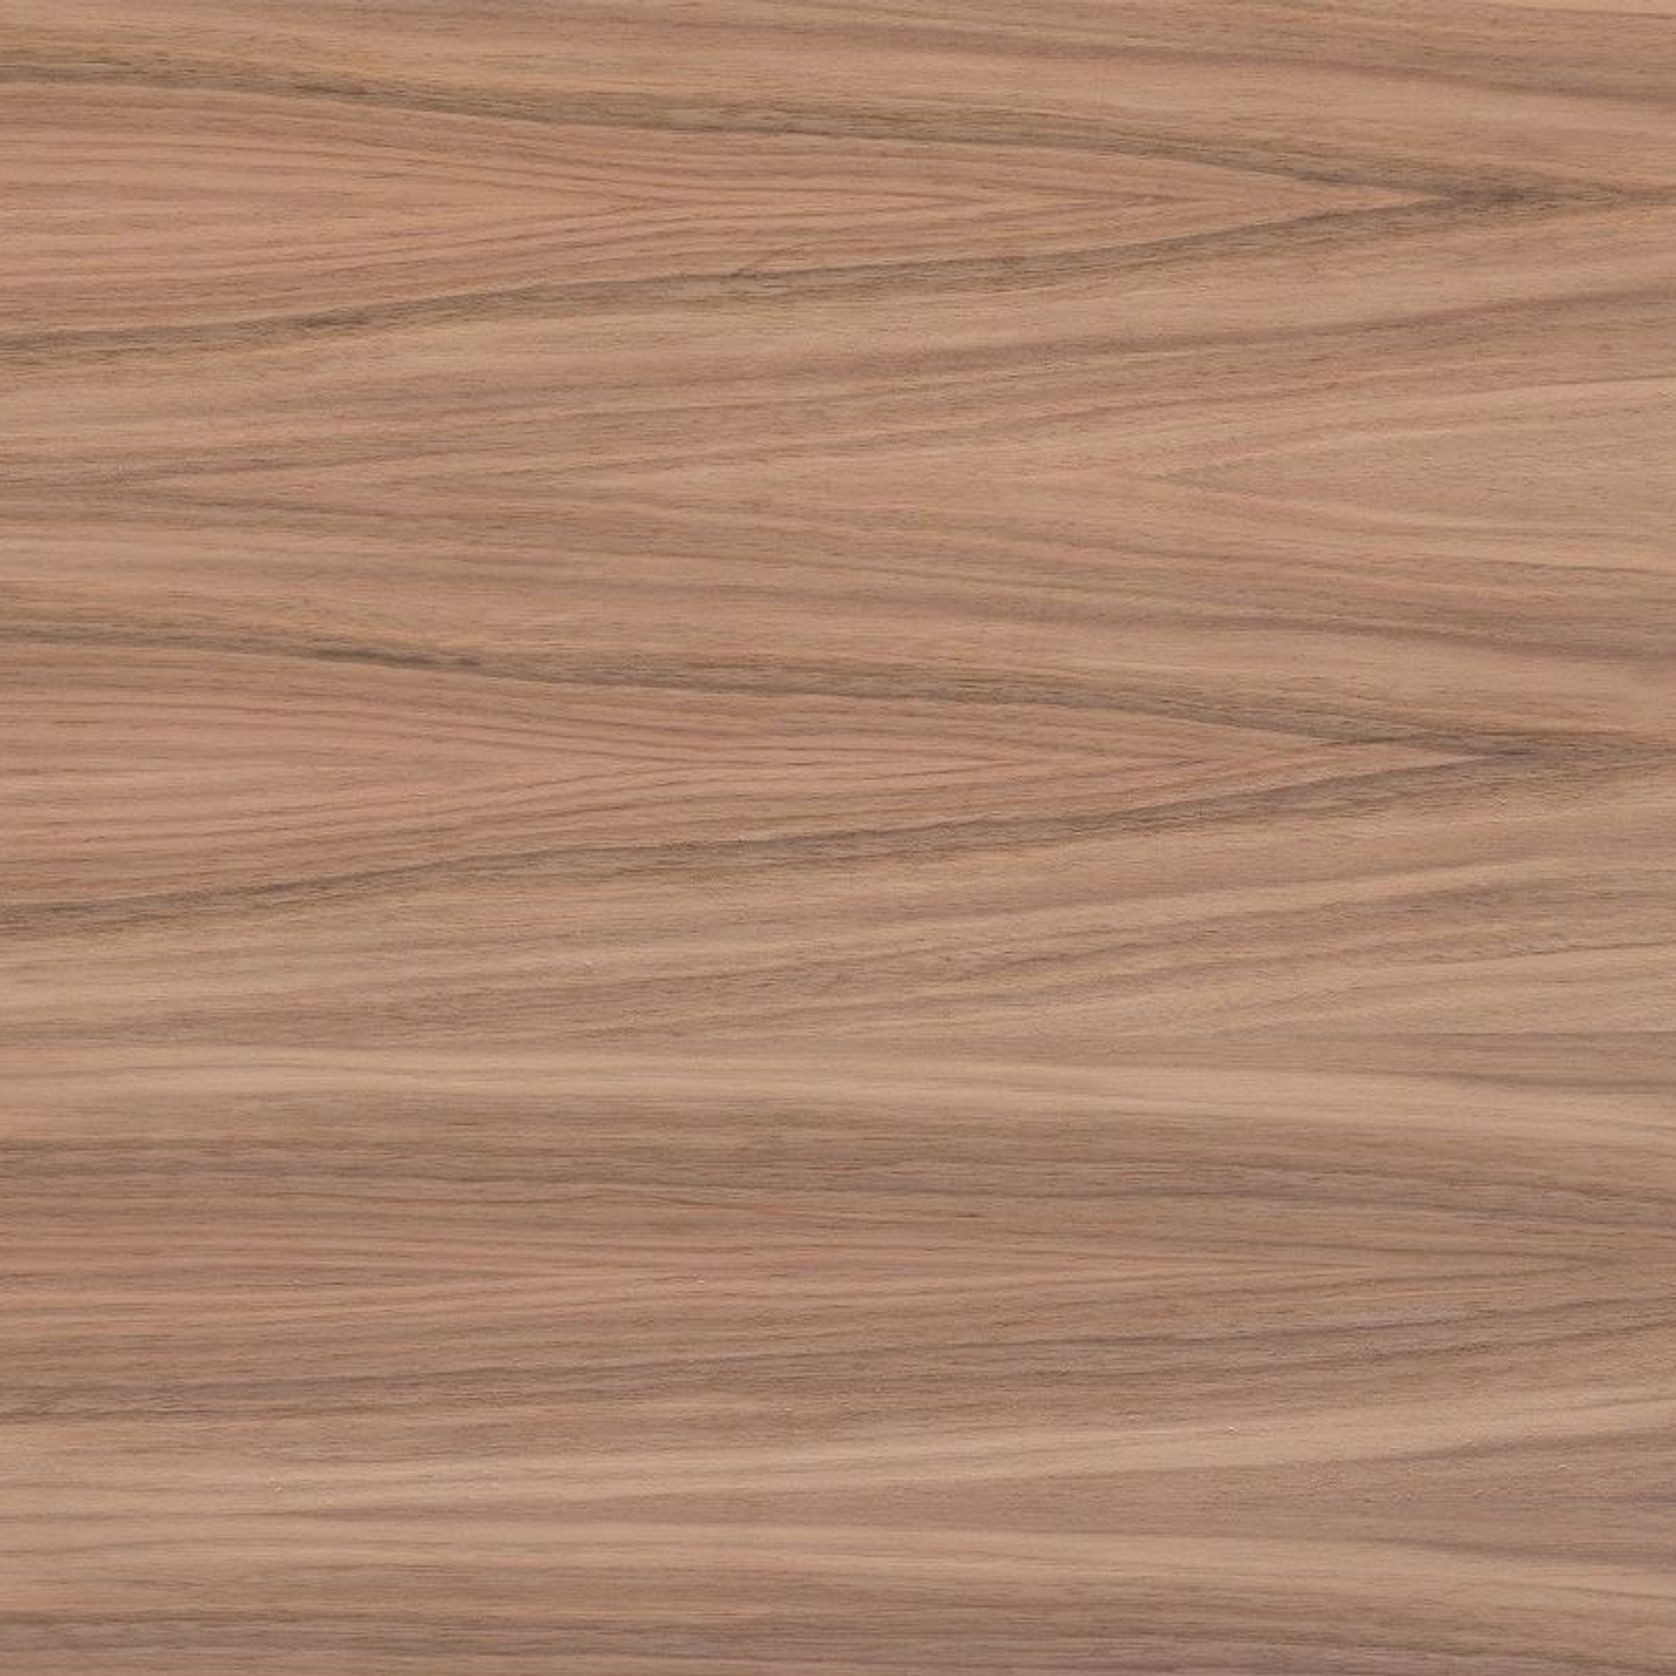 Furnier American Walnut | Timber Veneer Panels gallery detail image